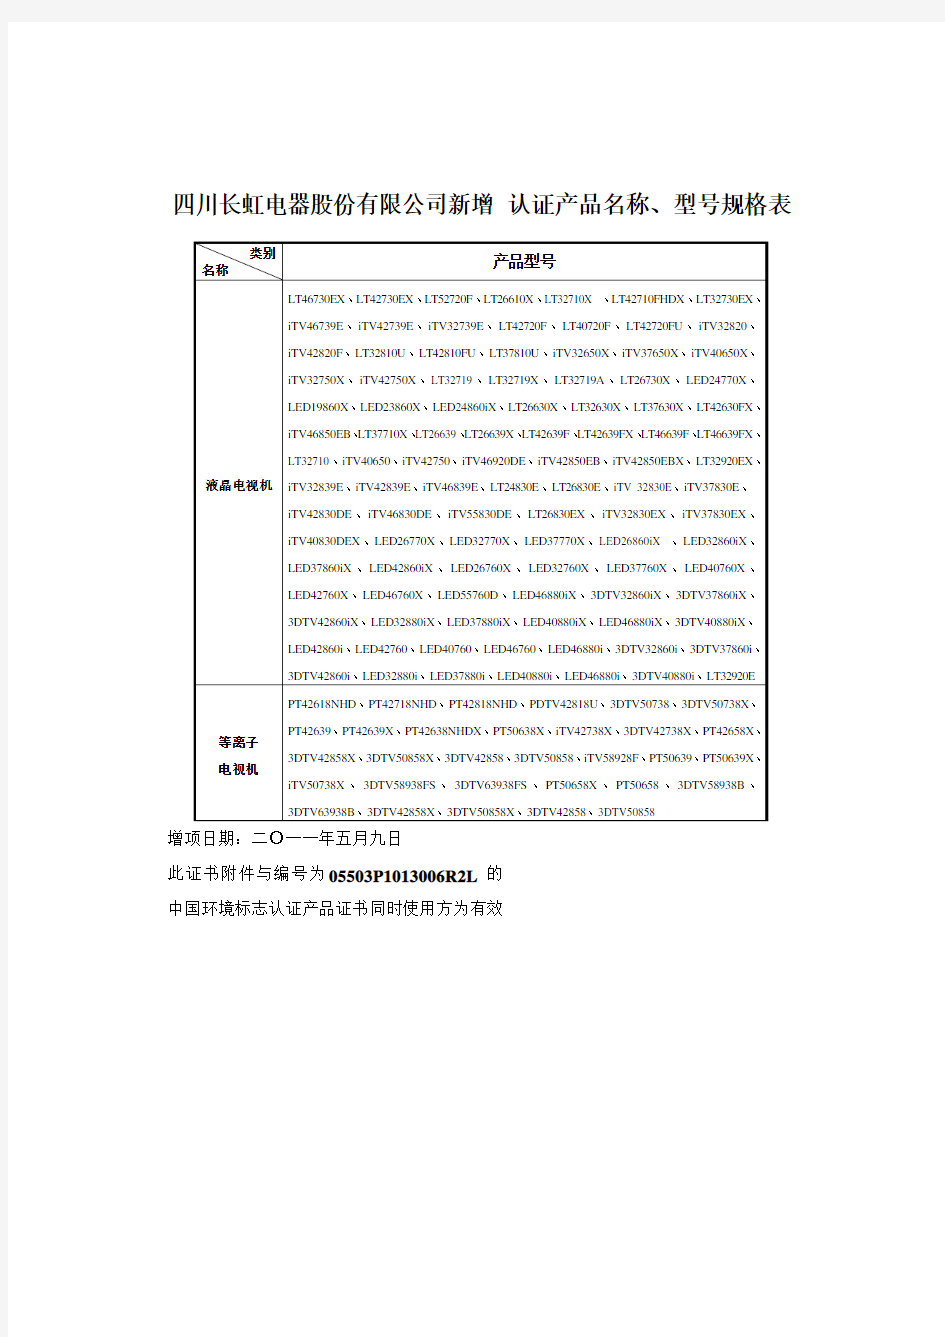 四川长虹电器股份有限公司认证产品名称、型号